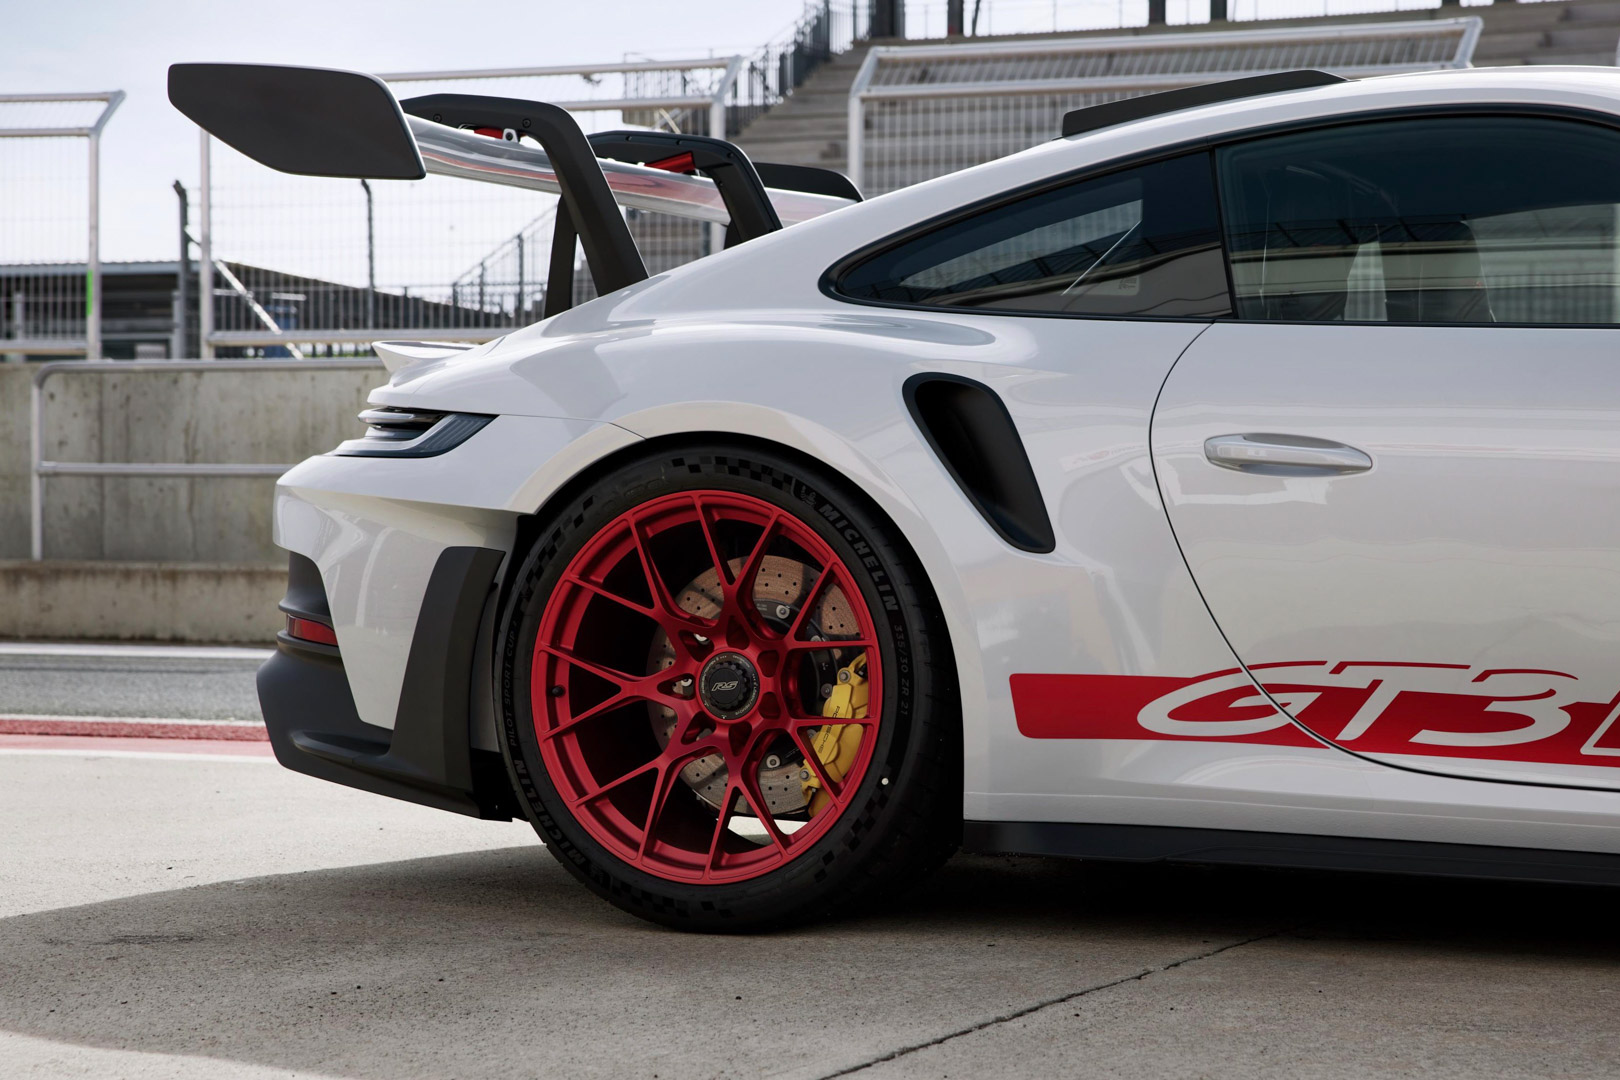 Chi tiết Porsche 911 GT3 RS thế hệ mới - ảnh 7